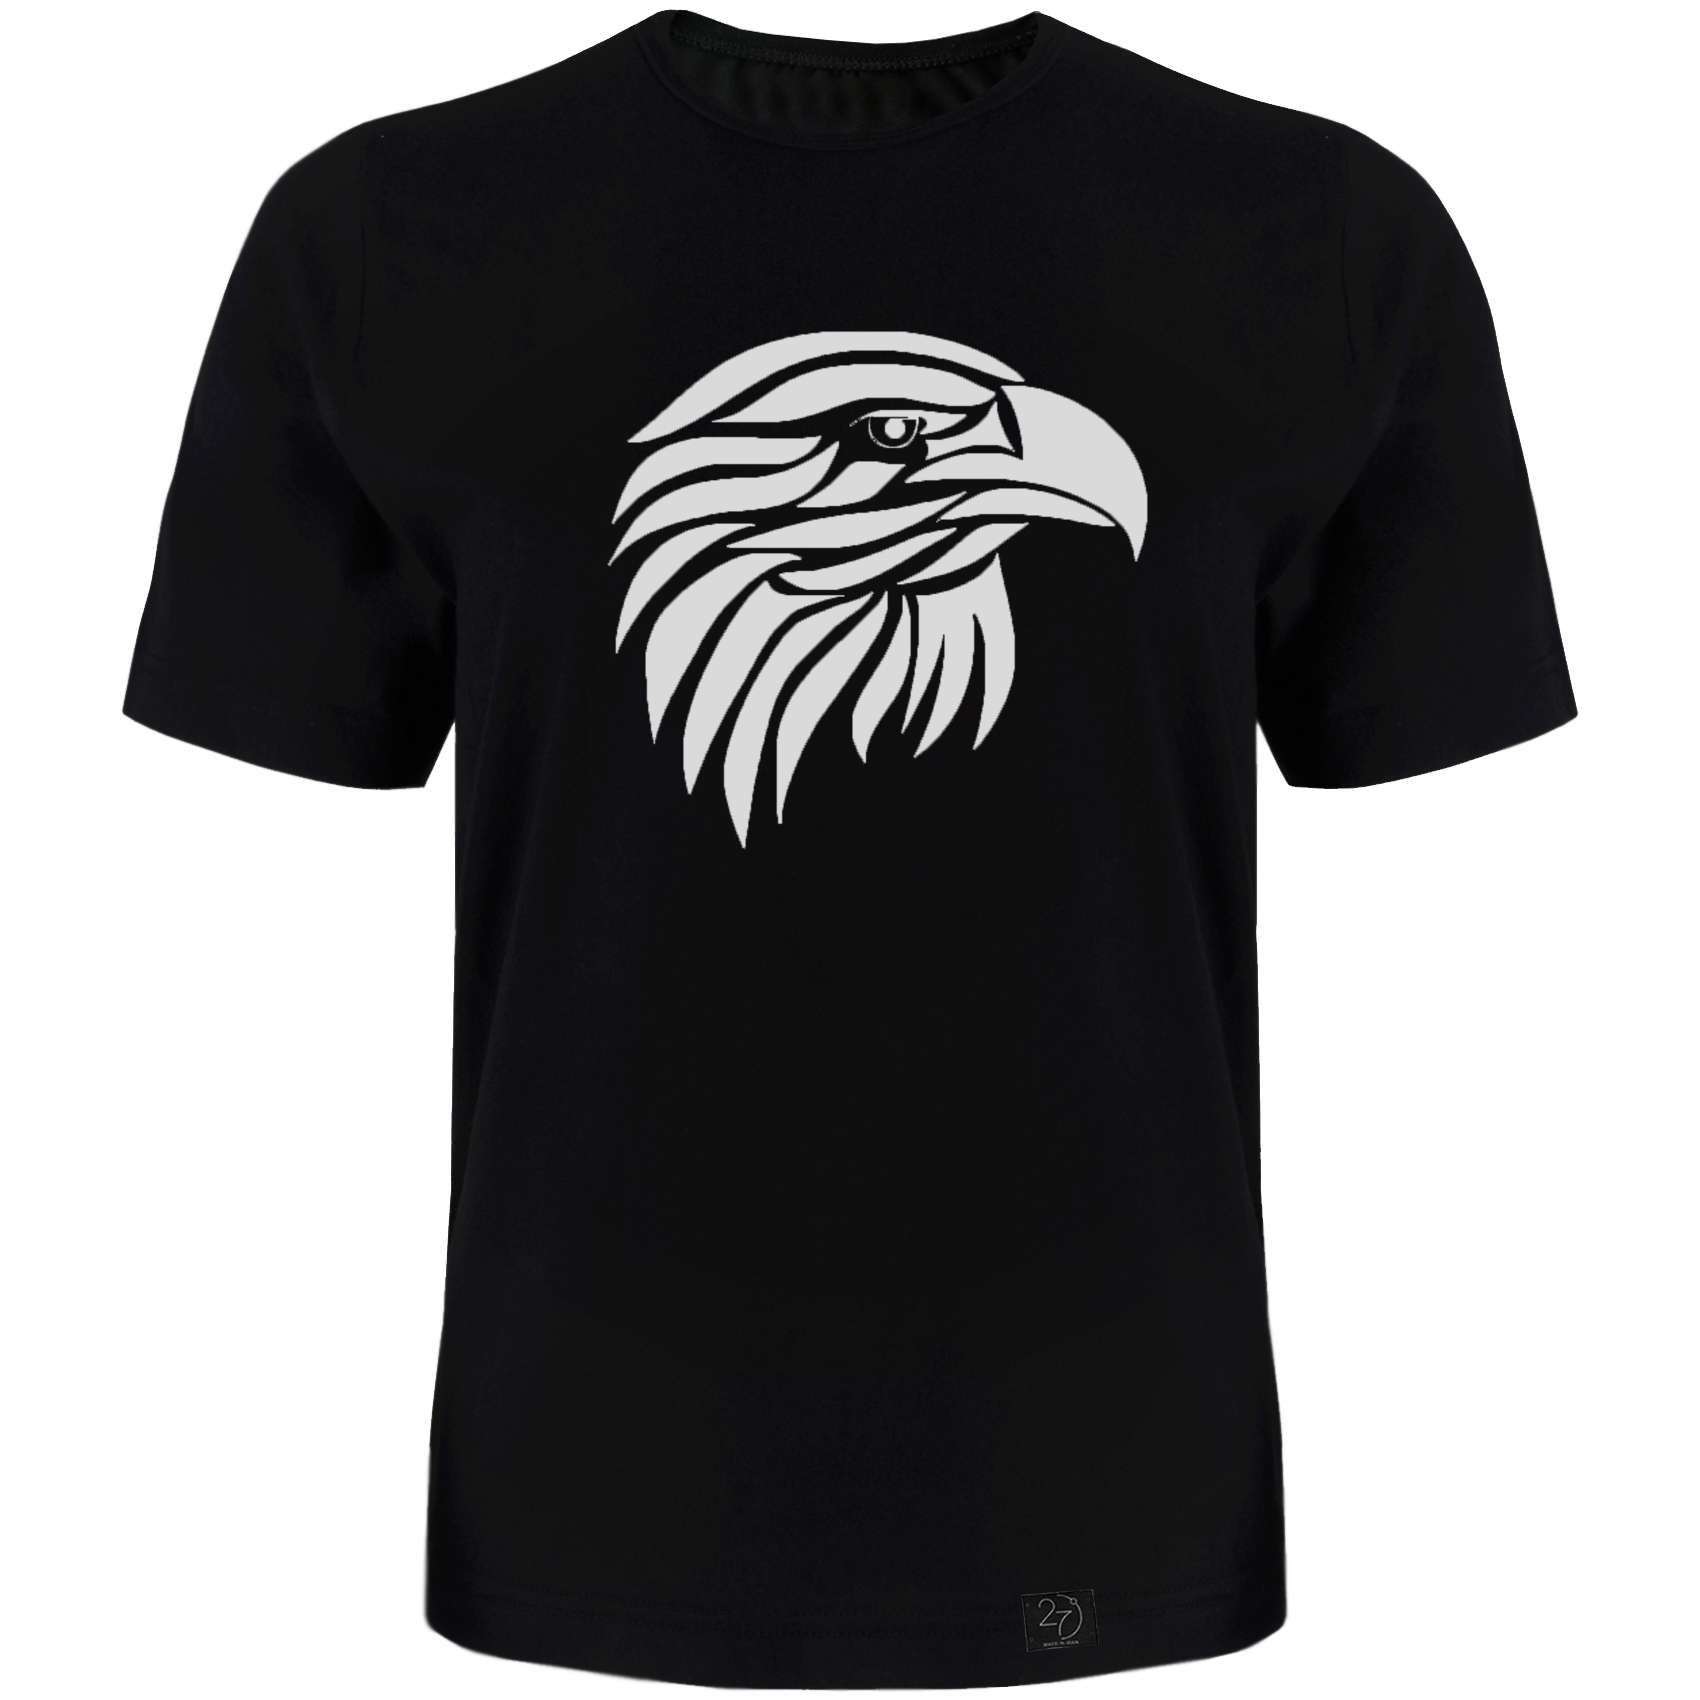 تی شرت آستین کوتاه مردانه 27 طرح عقاب کد TR05 رنگ مشکی